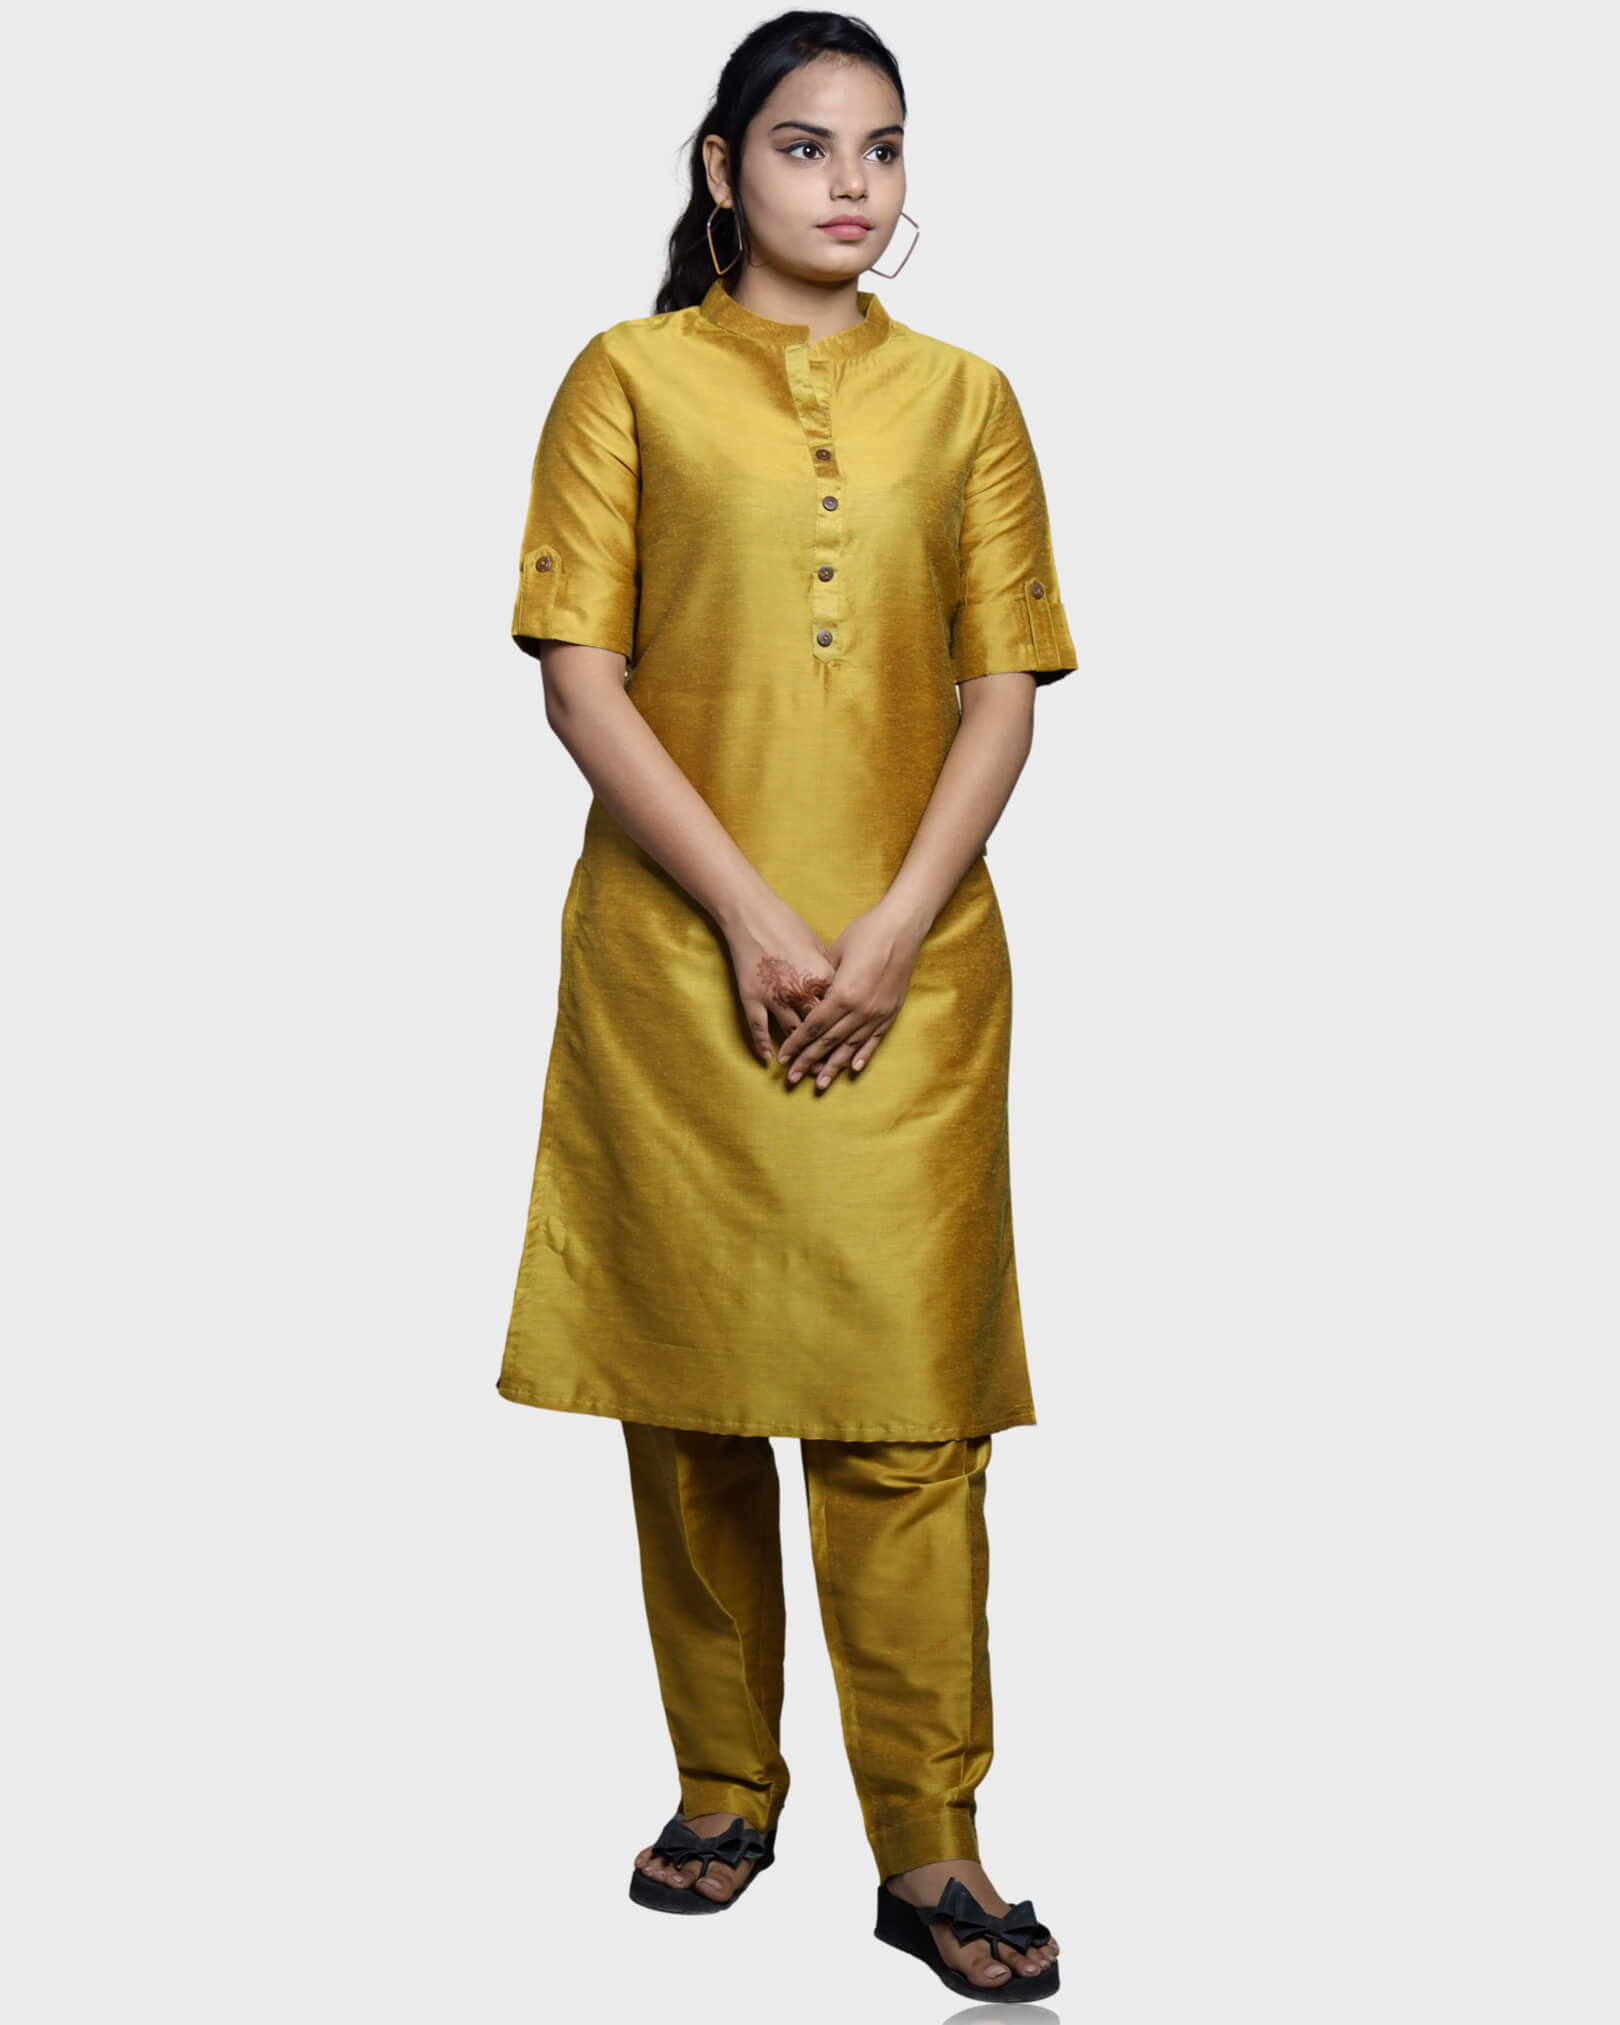 Designer Women's Rayon Jaipuri Artisans Gold Printed Anarkali Flared Kurti  With Banarasi Gold Printed Dupatta Set - Shri Krishna Fabric - 4143641